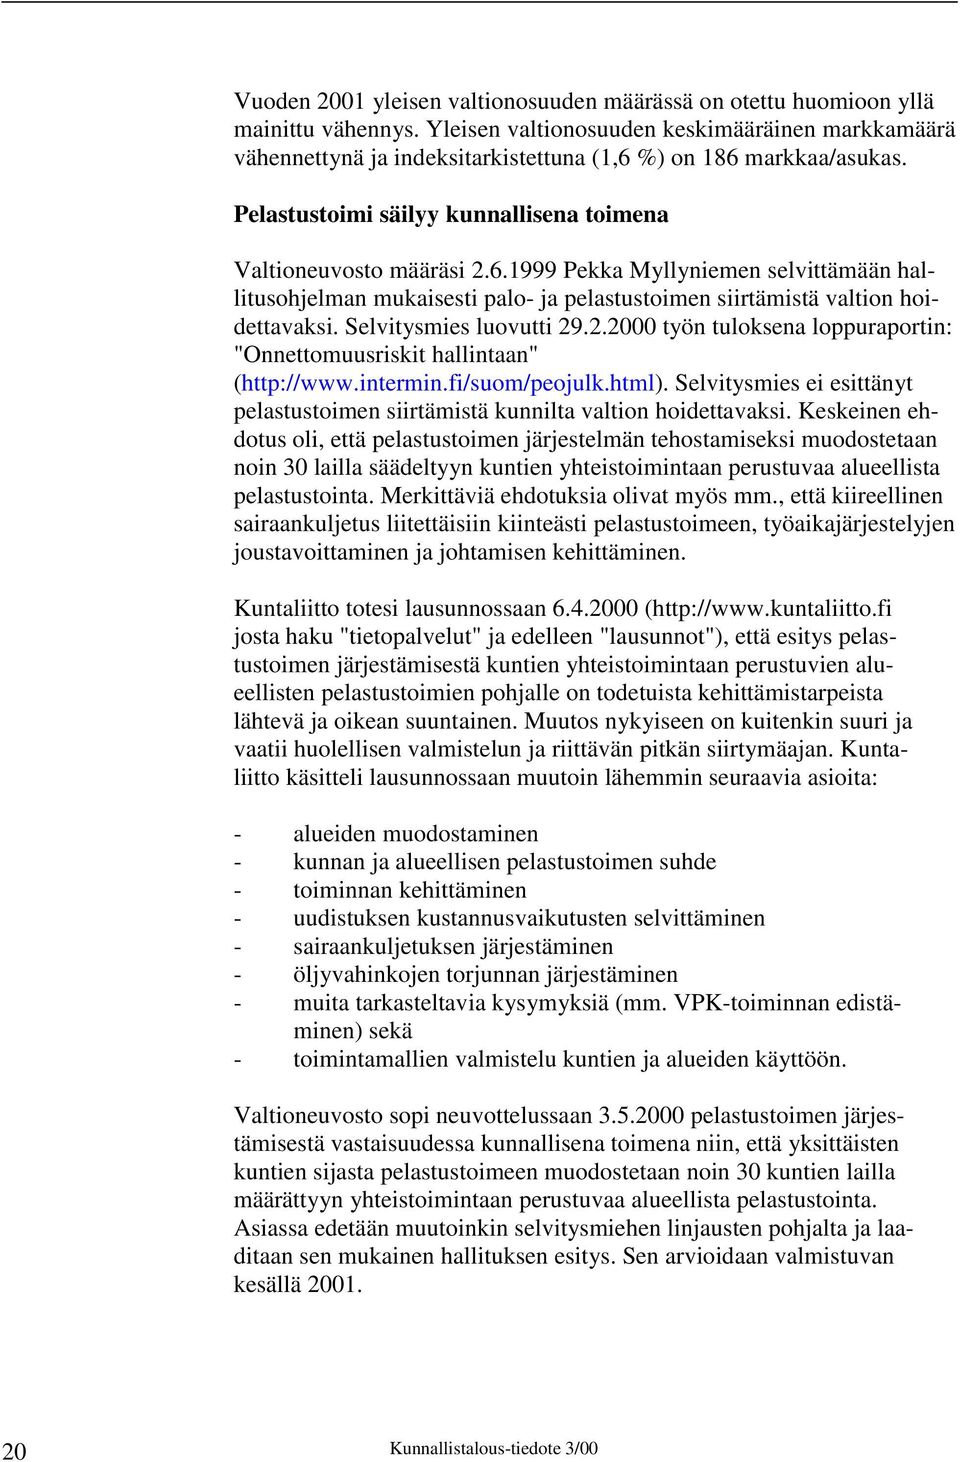 %) on 186 markkaa/asukas. Pelastustoimi säilyy kunnallisena toimena Valtioneuvosto määräsi 2.6.1999 Pekka Myllyniemen selvittämään hallitusohjelman mukaisesti palo- ja pelastustoimen siirtämistä valtion hoidettavaksi.